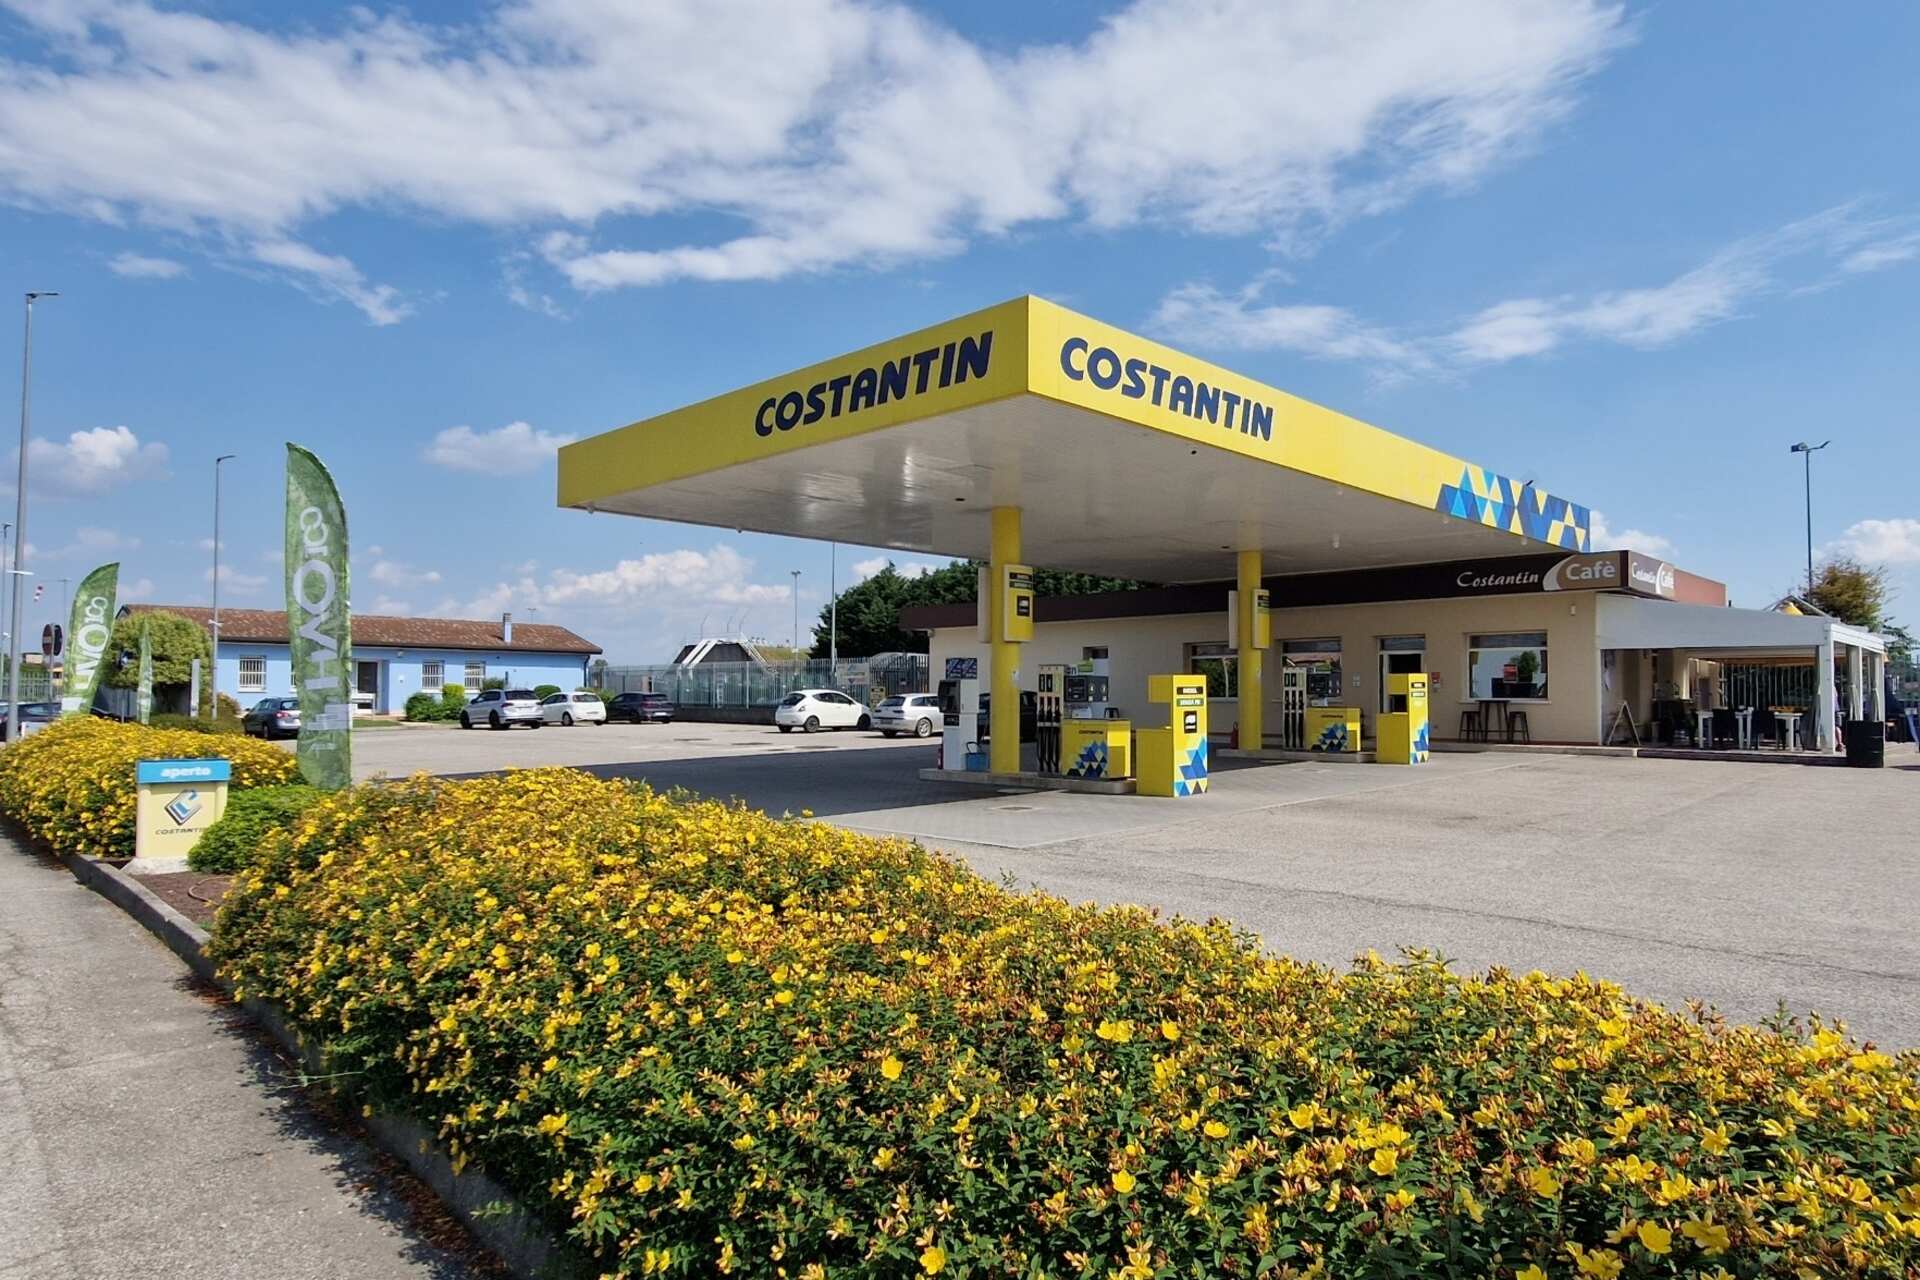 Биодизельное топливо: автозаправочная станция Costantin в Мерларе, провинция Падуя, продает исключительно HVO100 или гидрогенизированное растительное масло.